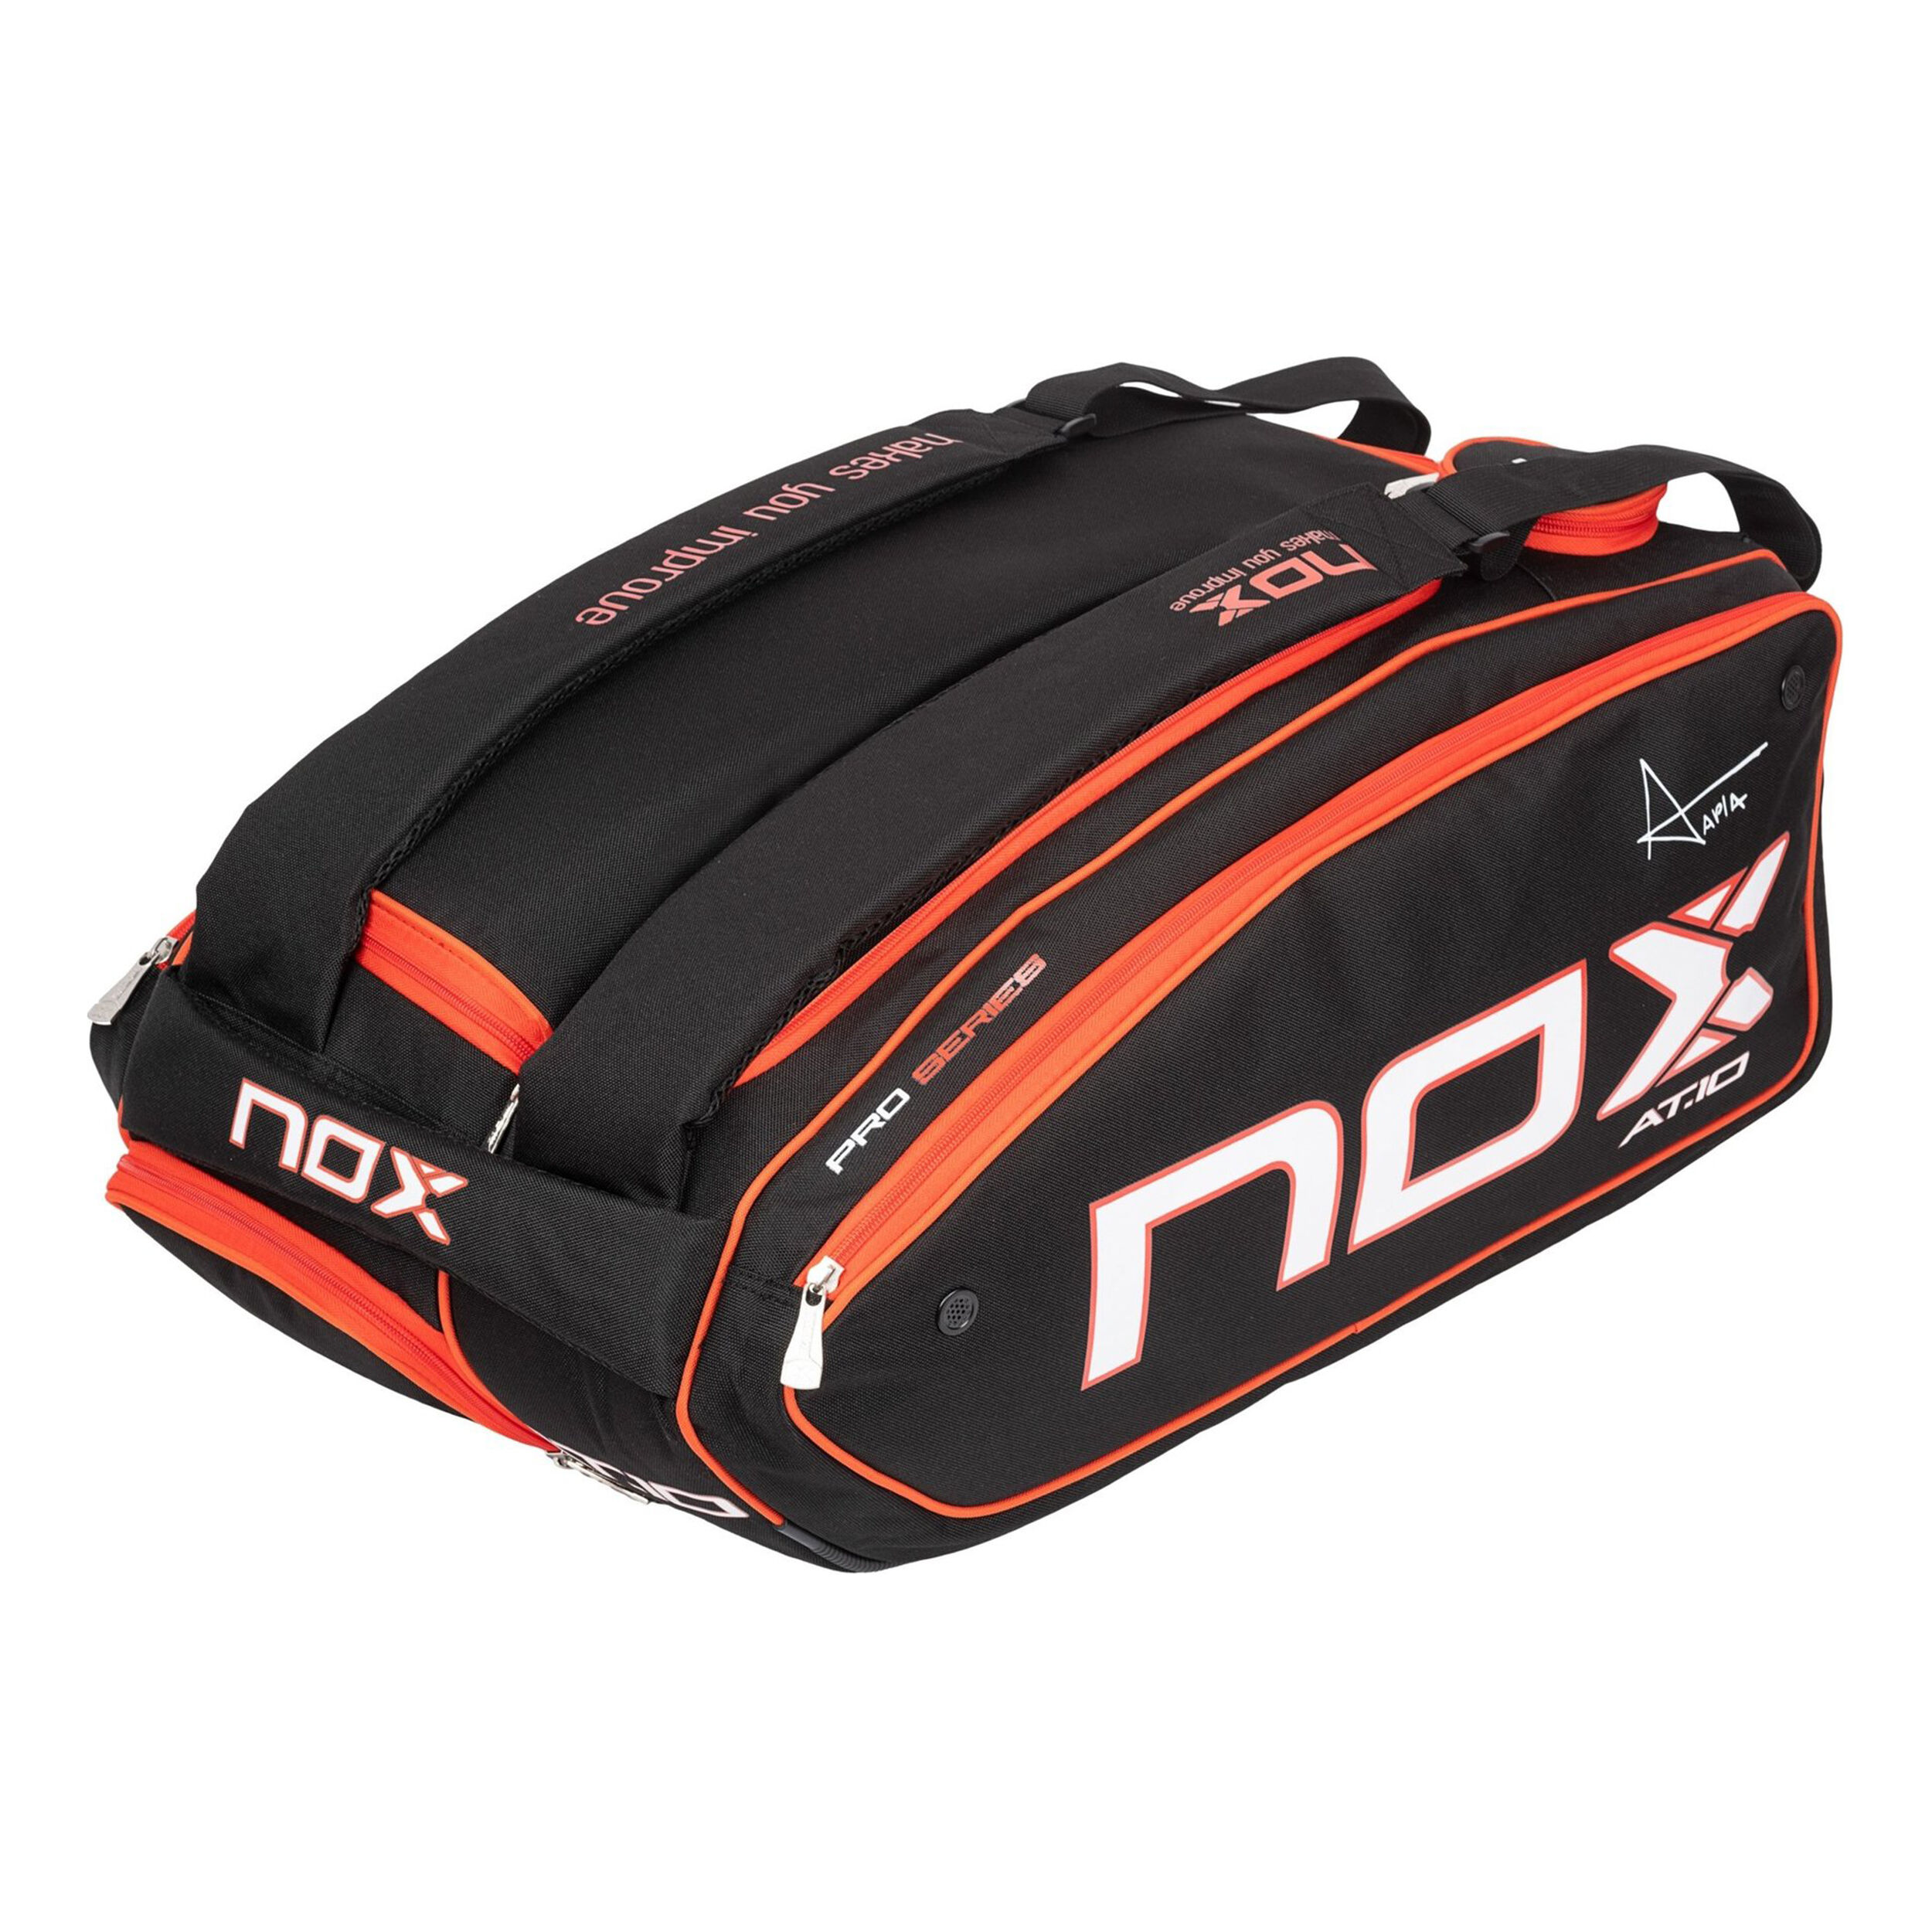 AT10 XXL Padel Racket Bag - Black, Orange